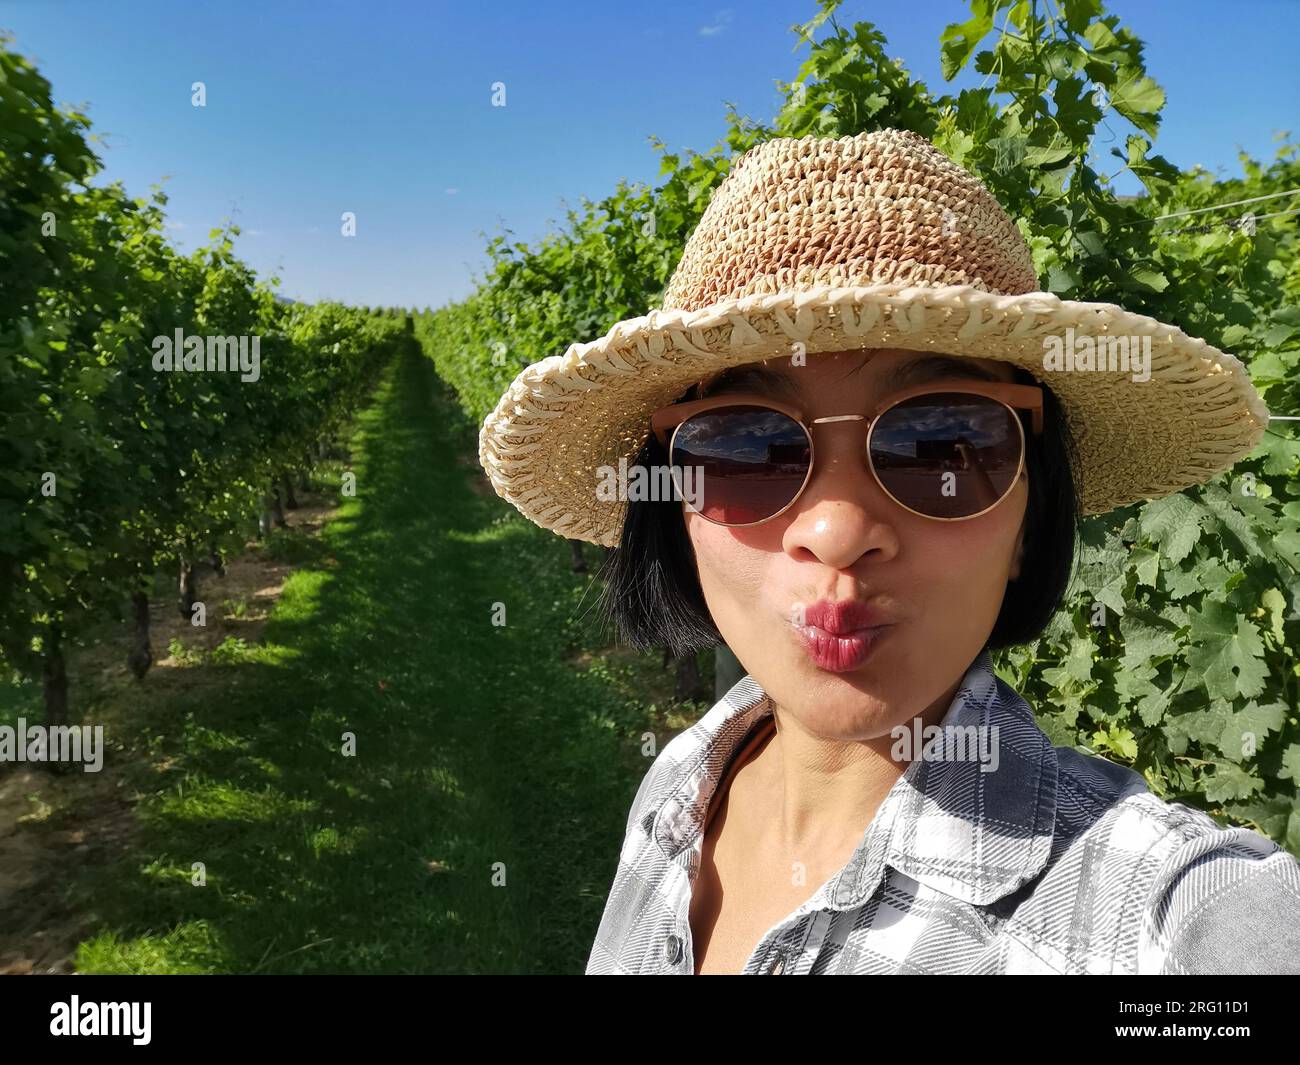 Jeune touriste prenant un selfie dans des vignobles de raisin biologique, vallée de l'Okanagan, Colombie-Britannique. Concept de voyage en plein air d'été au Canada. Banque D'Images